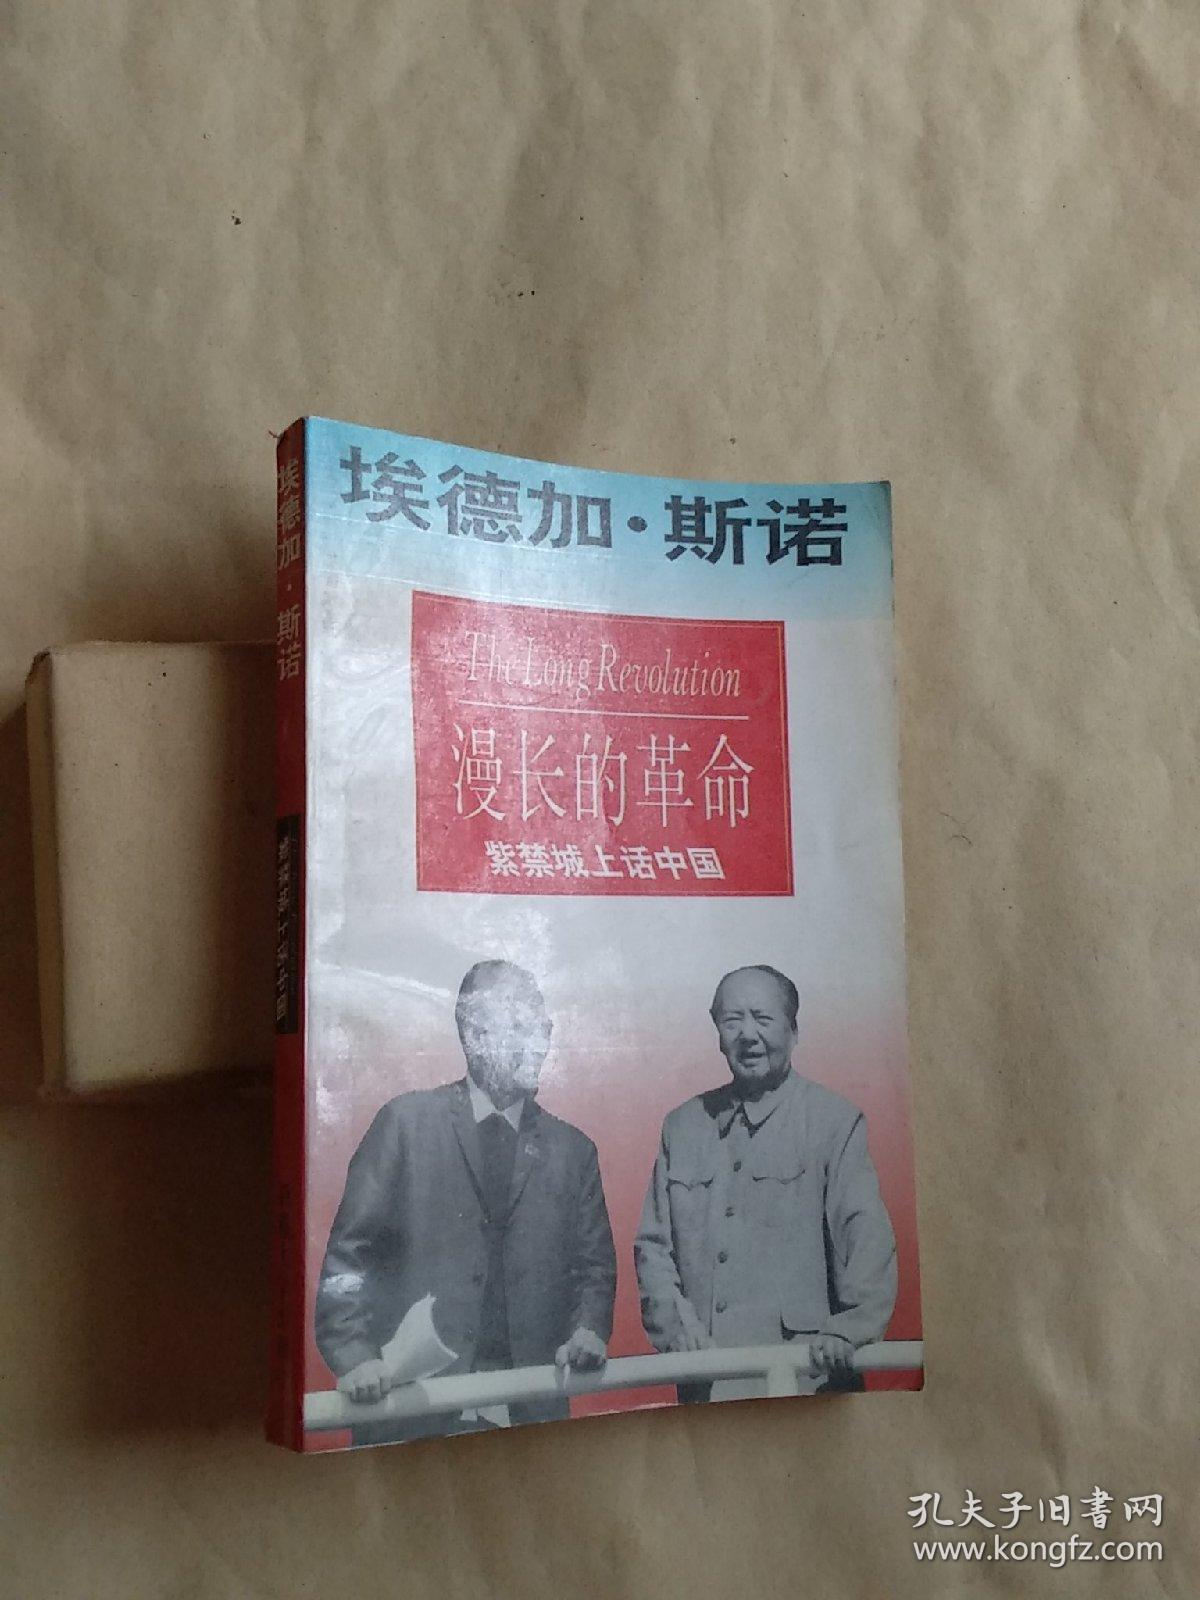 《漫长的革命》(斯诺写的回忆录,记录了中国的"文化大